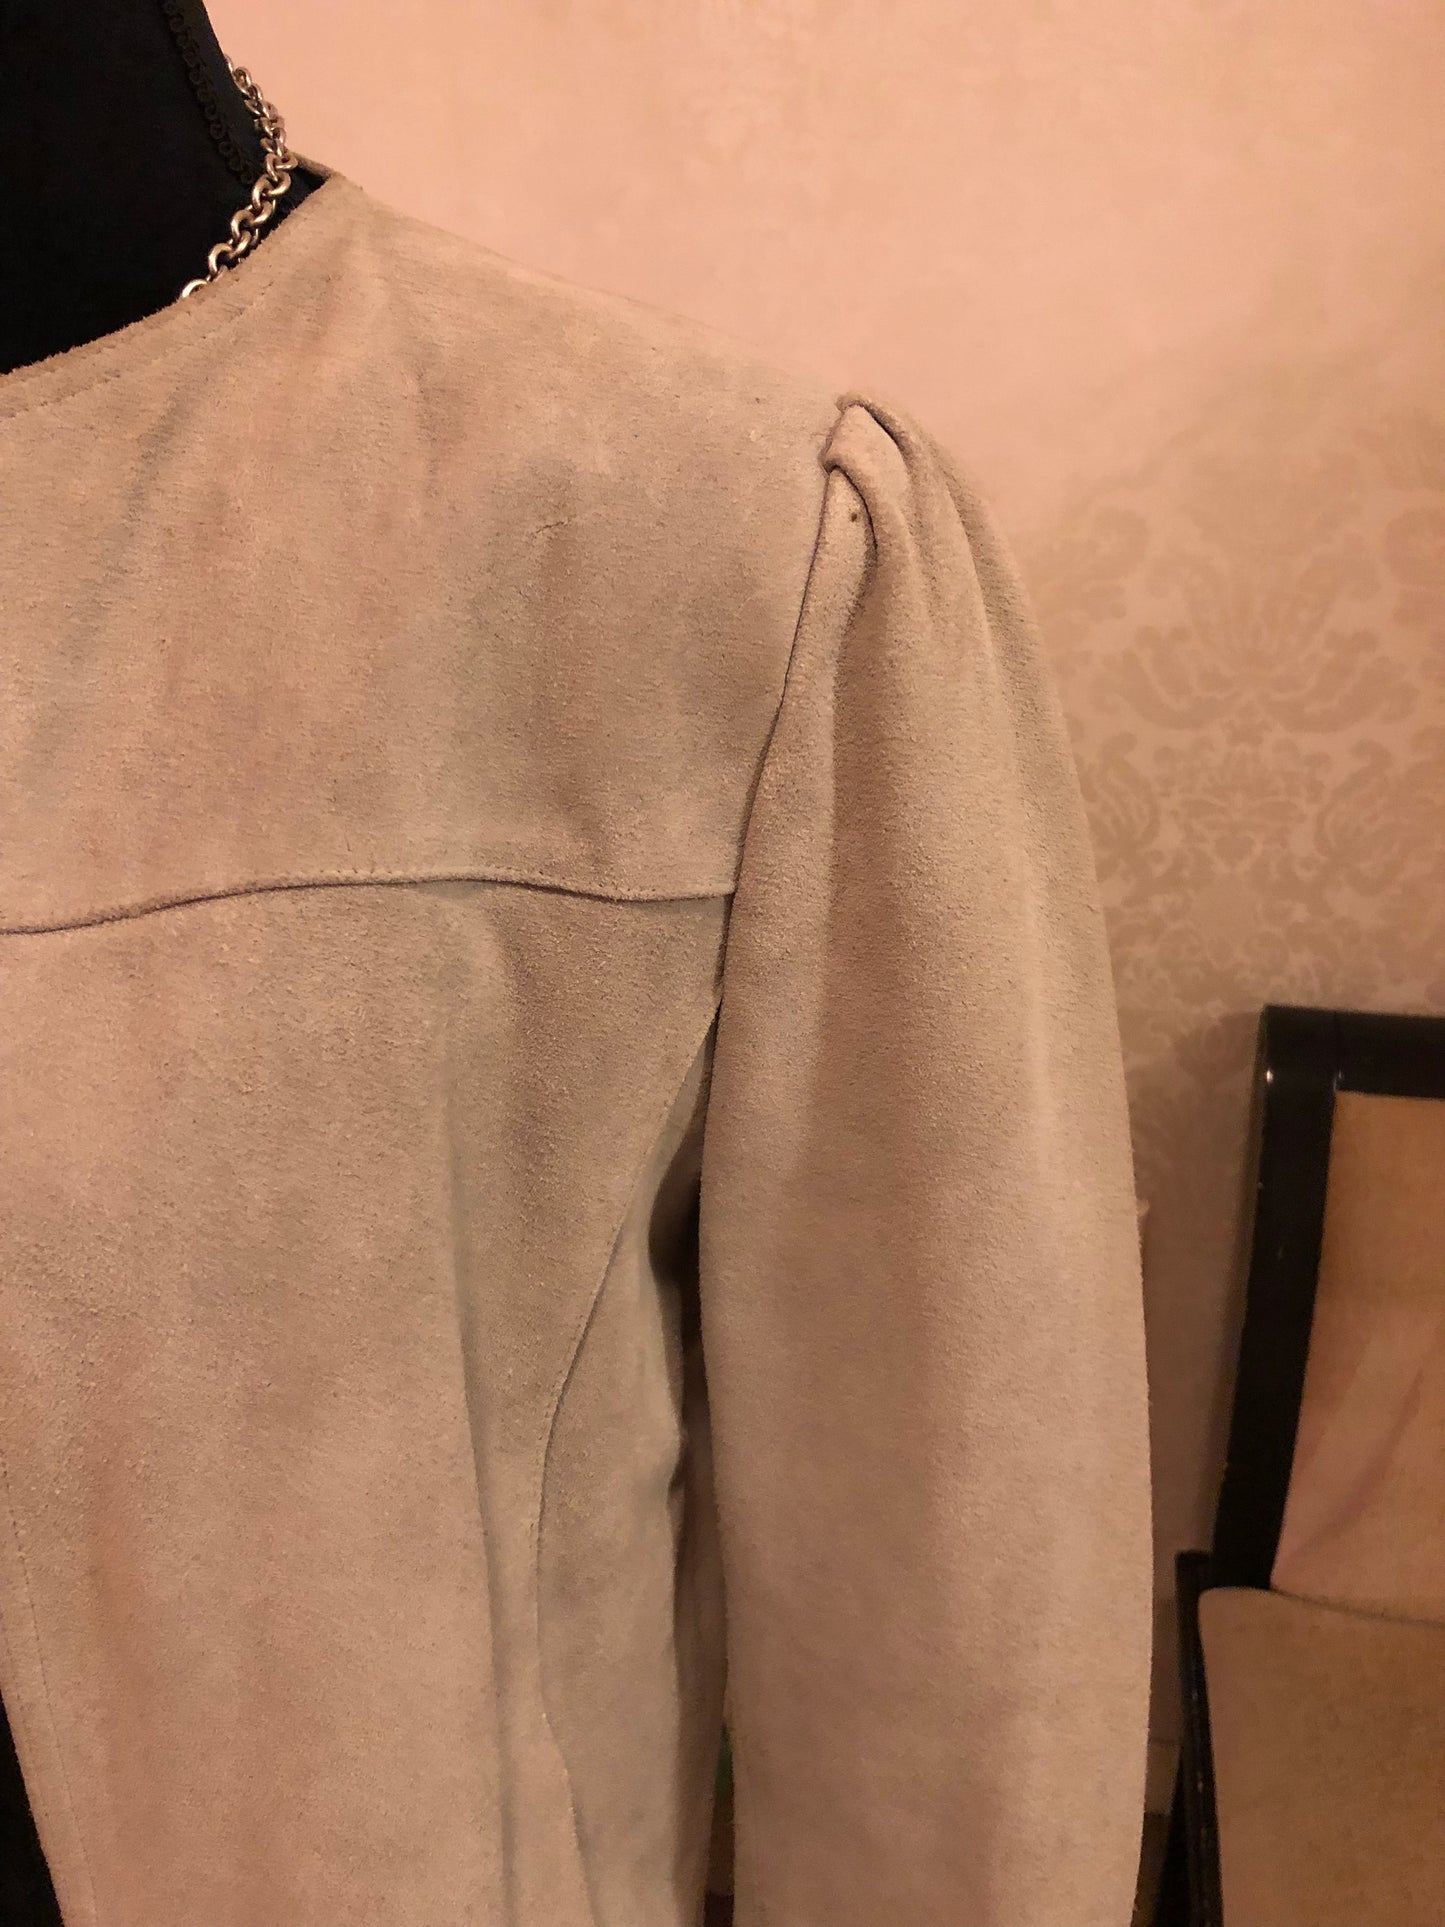 Neil Martin Genuine Leather Jacket, Size Large